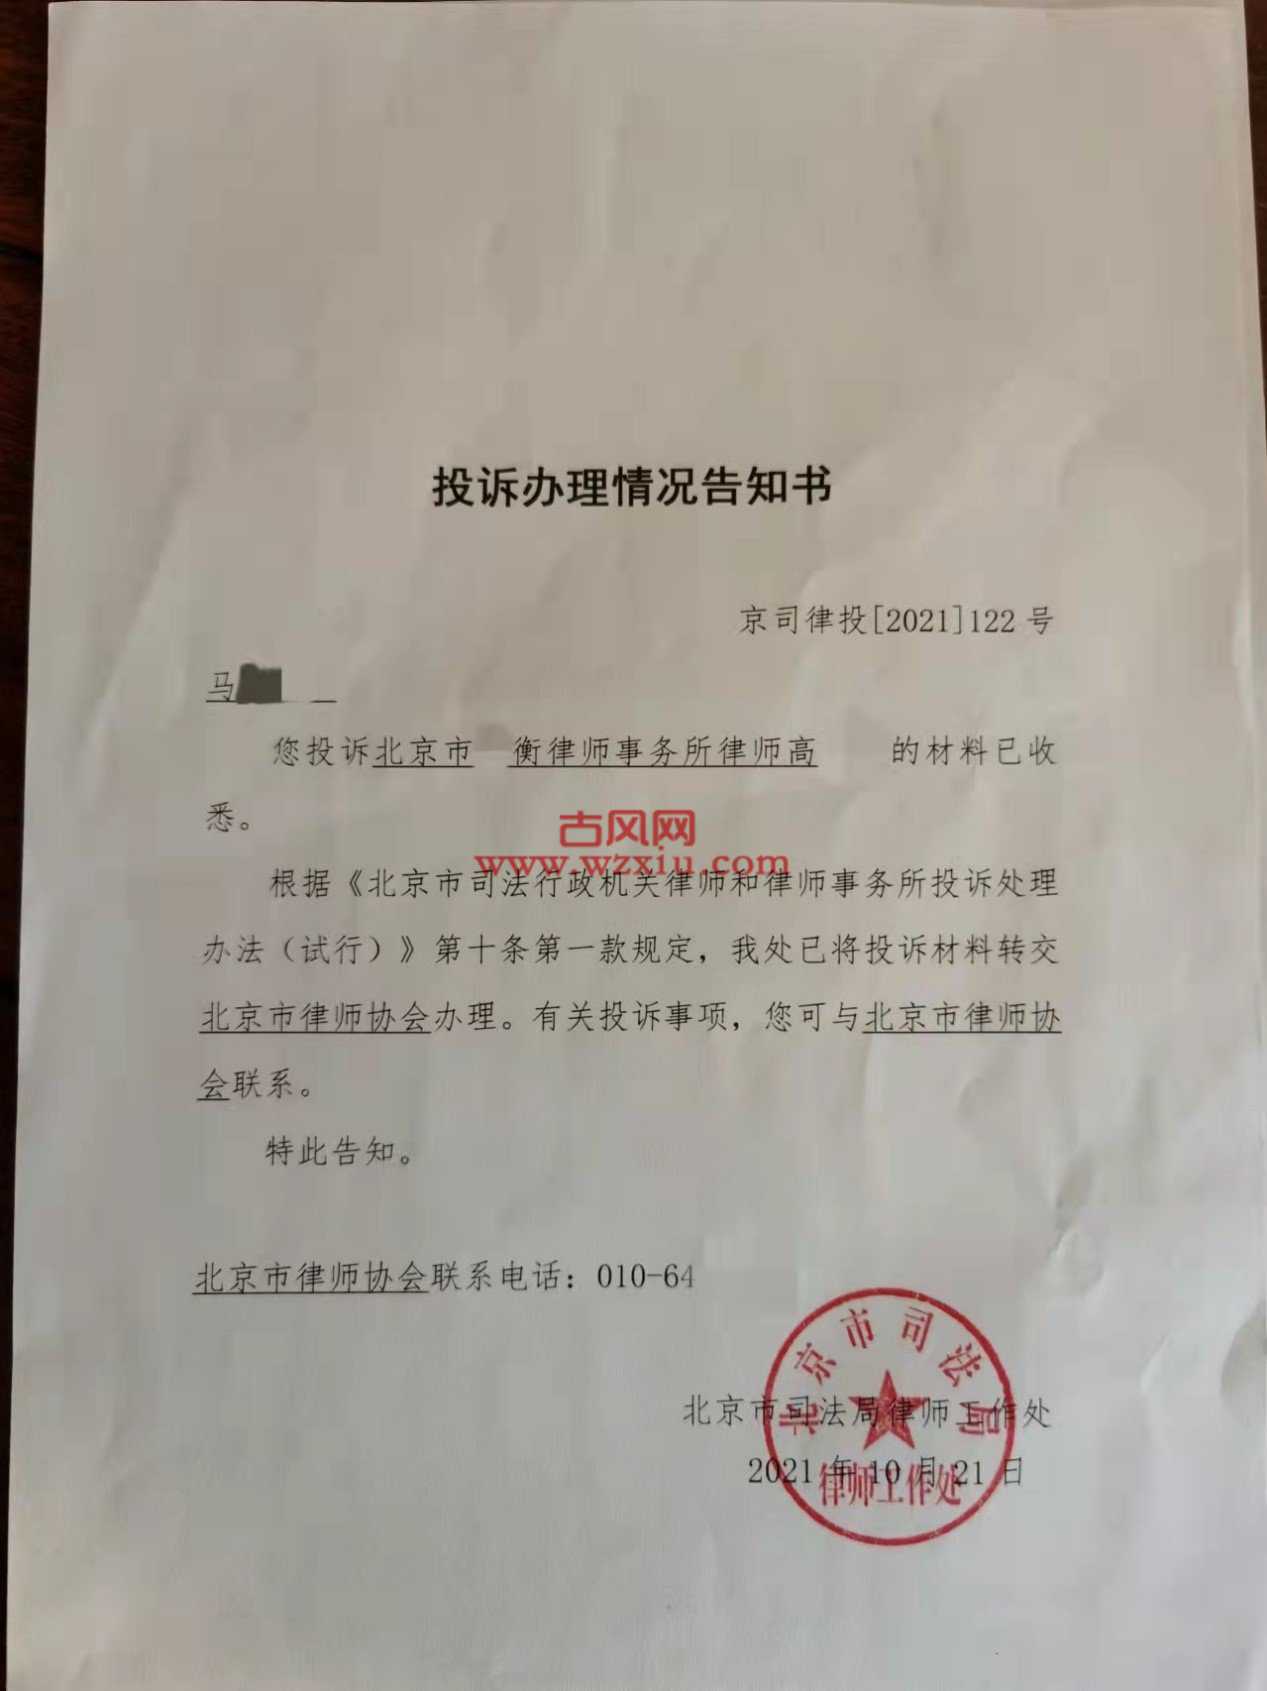 我向北京市司法局和律师协会举报了我的老公